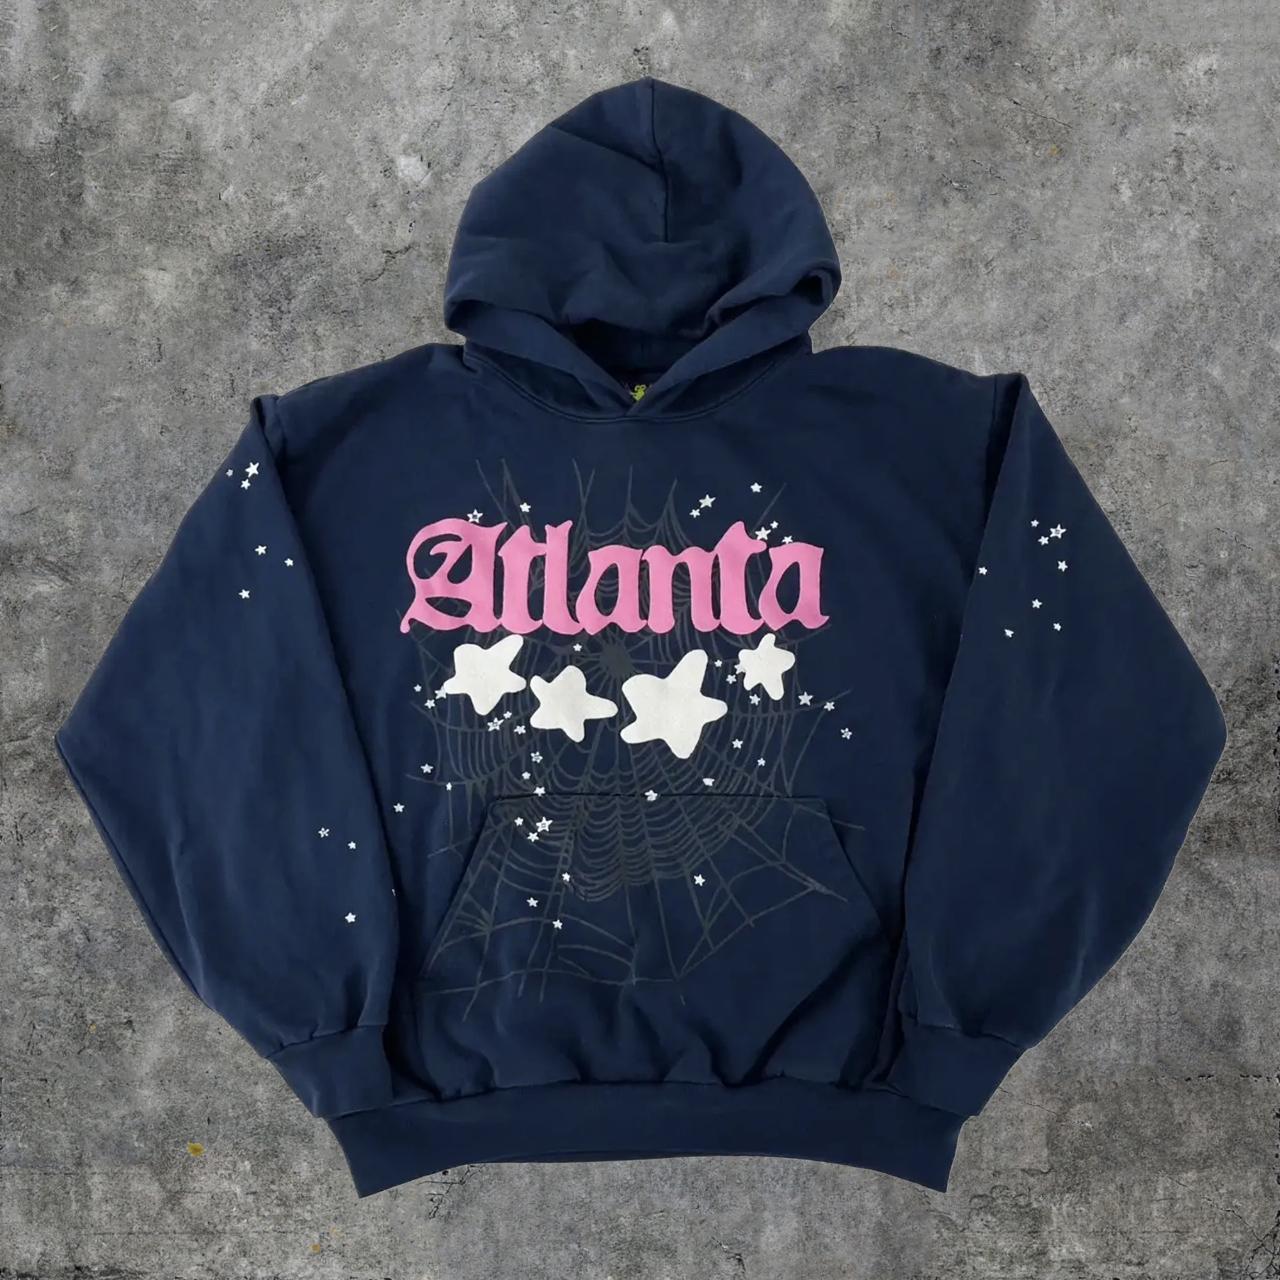 atlanta hoodie sp5der